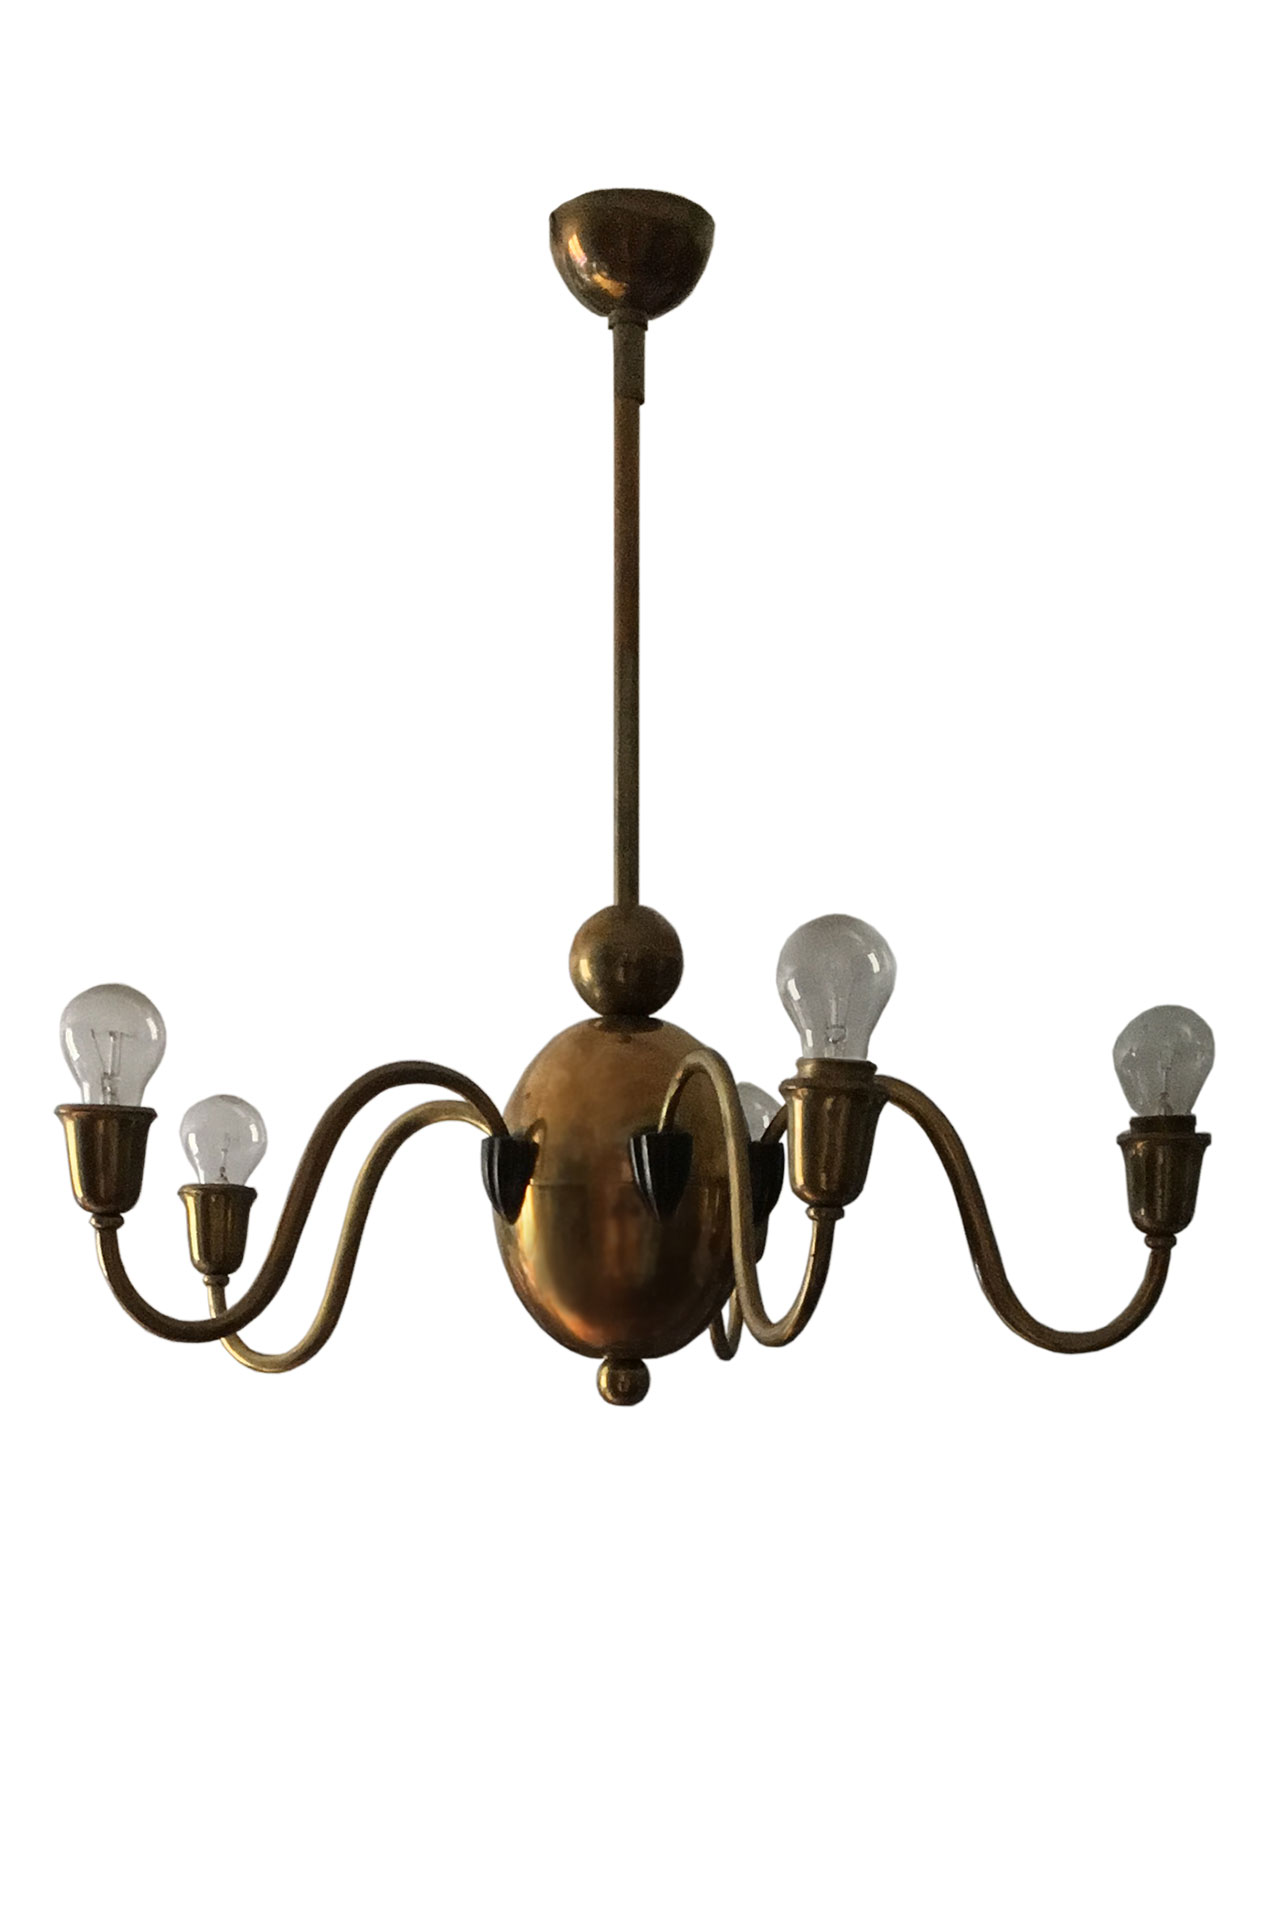 A five-light chandelier by Bruno Paul